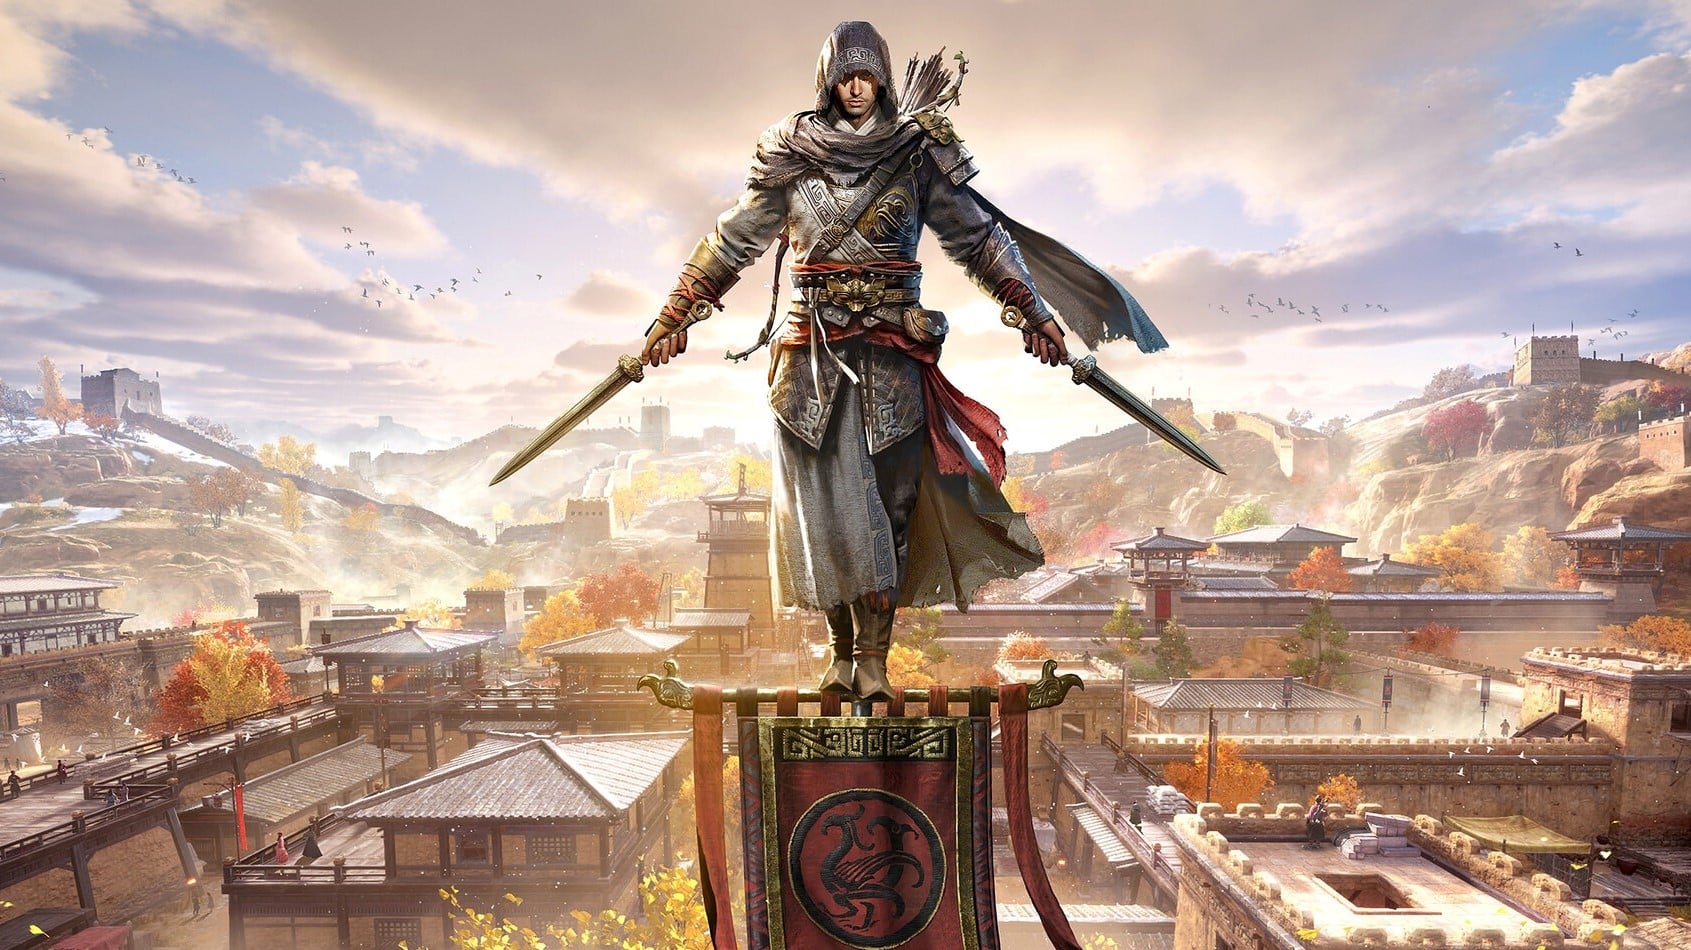 Download do APK de Assassins Creed Brotherhood para Android